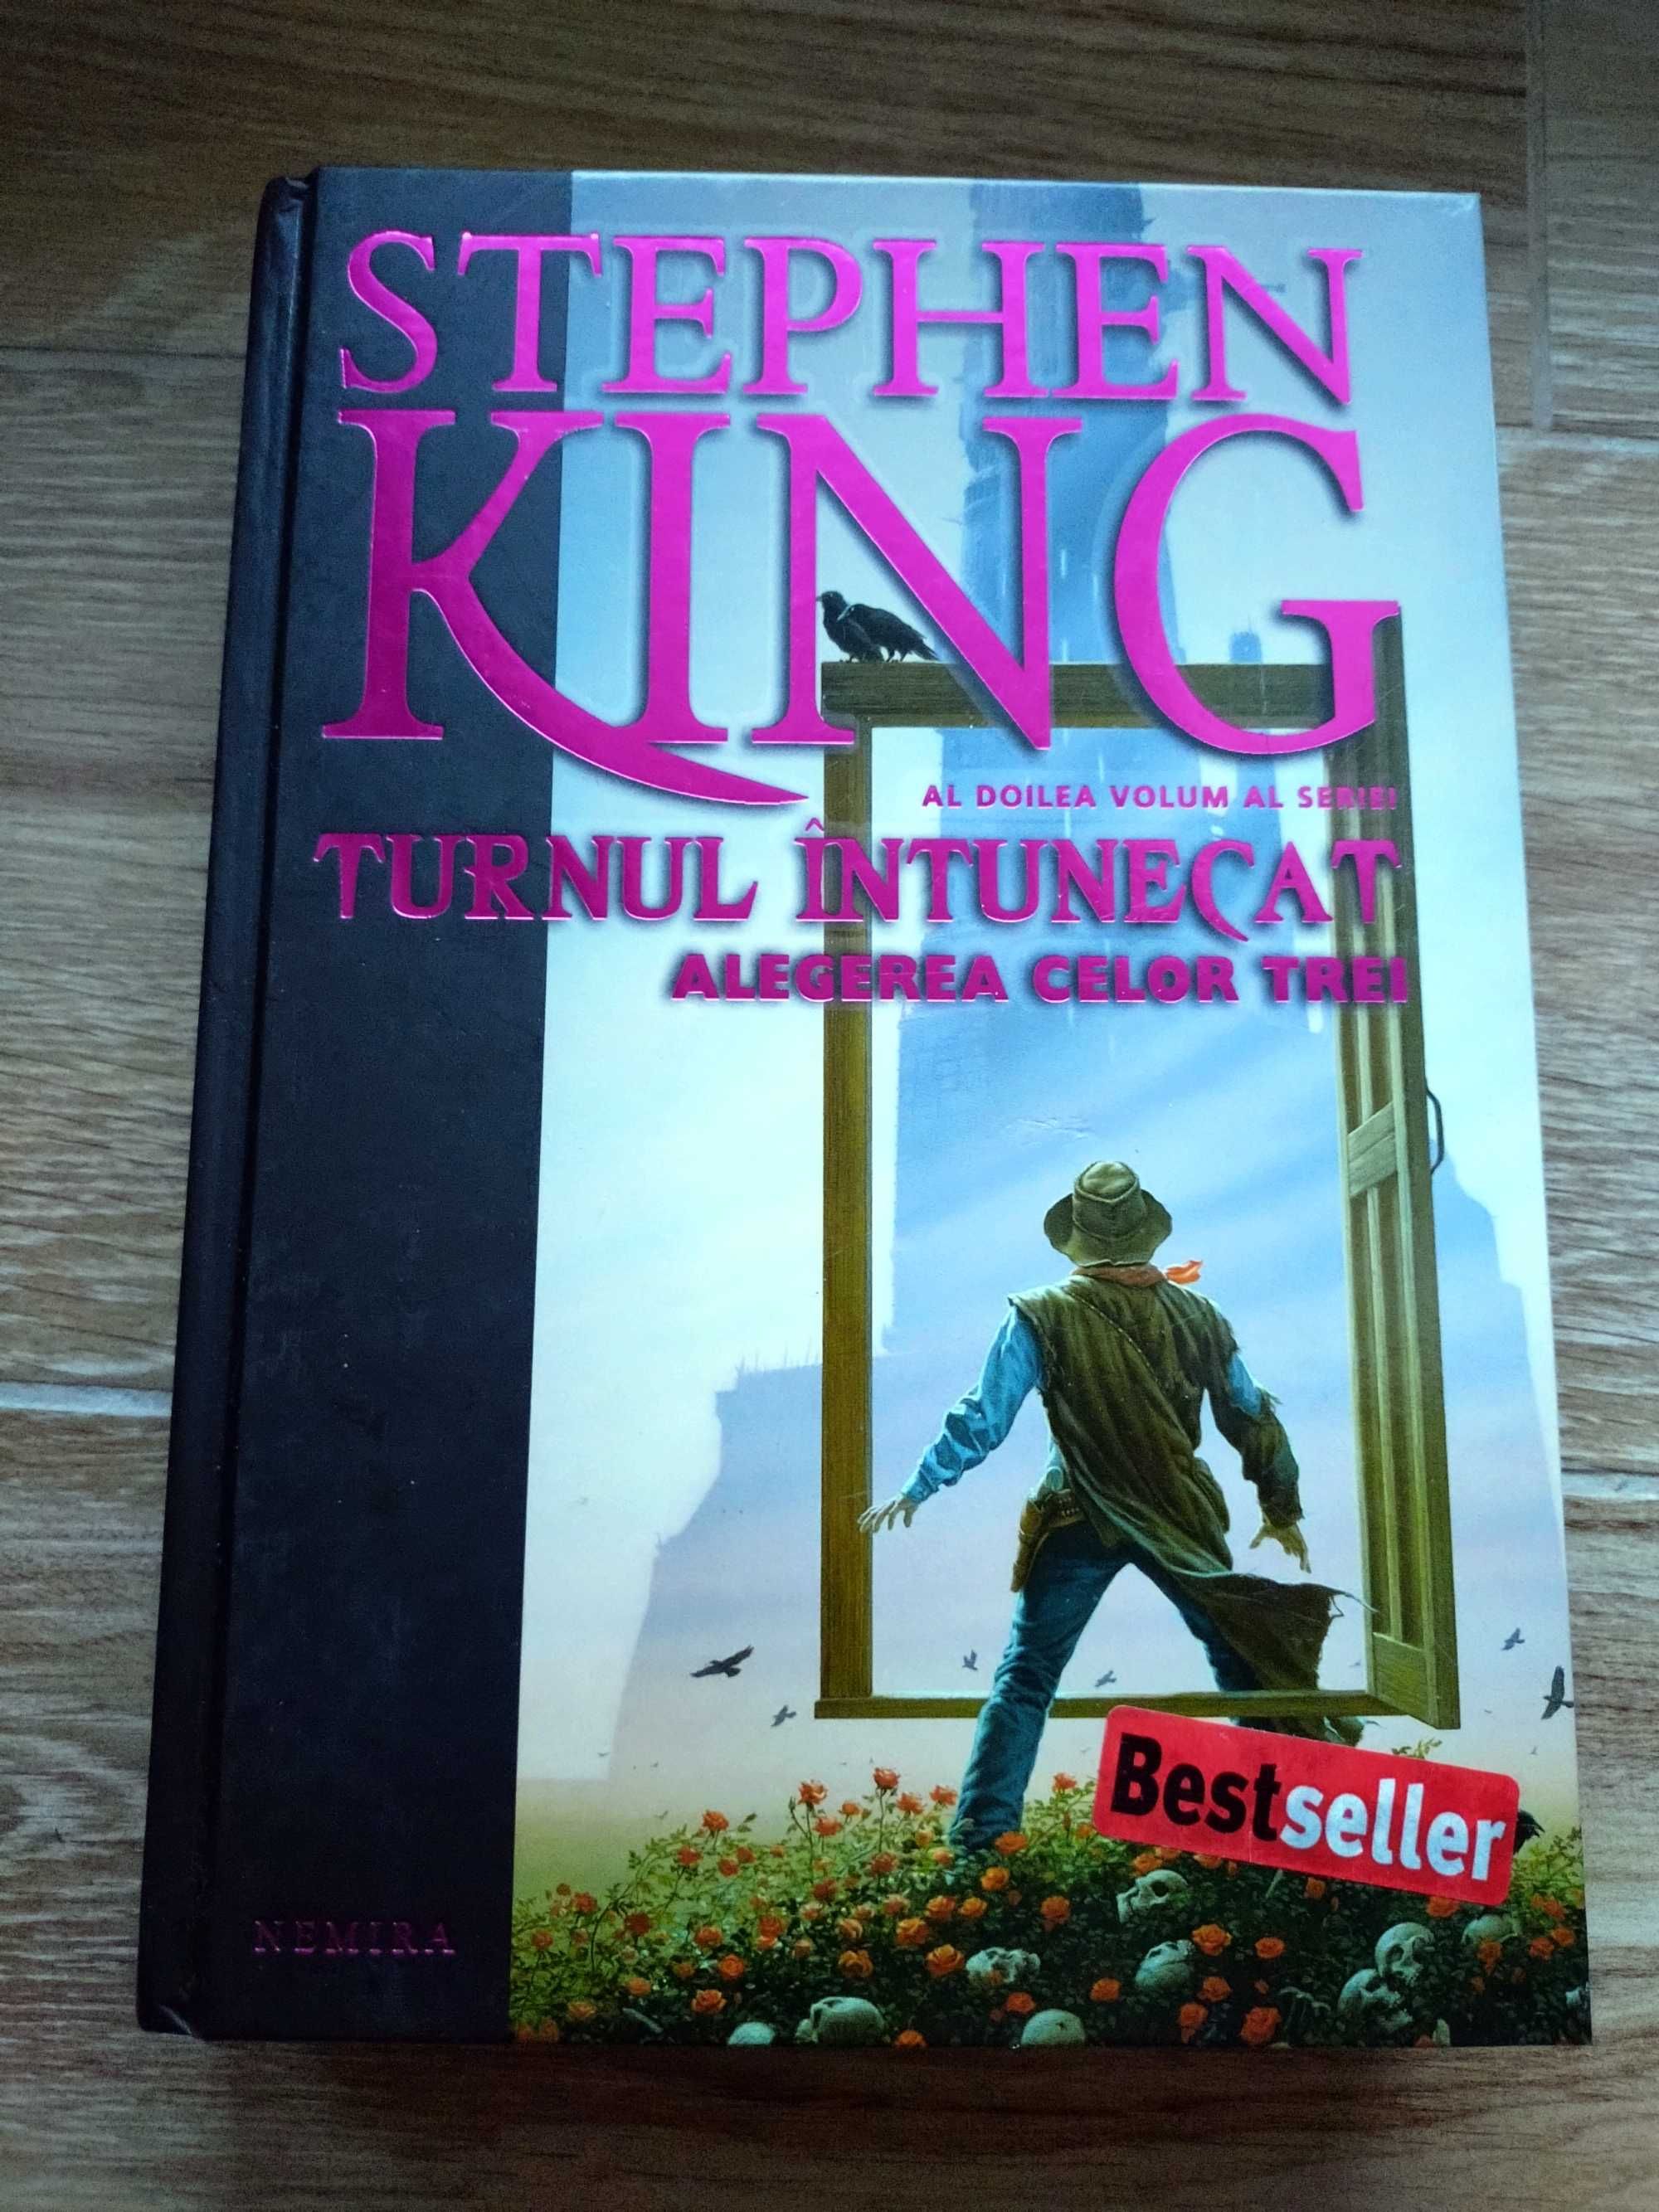 Stephen King: Pistolarul, Tinuturile pustii, Alegerea celor trei